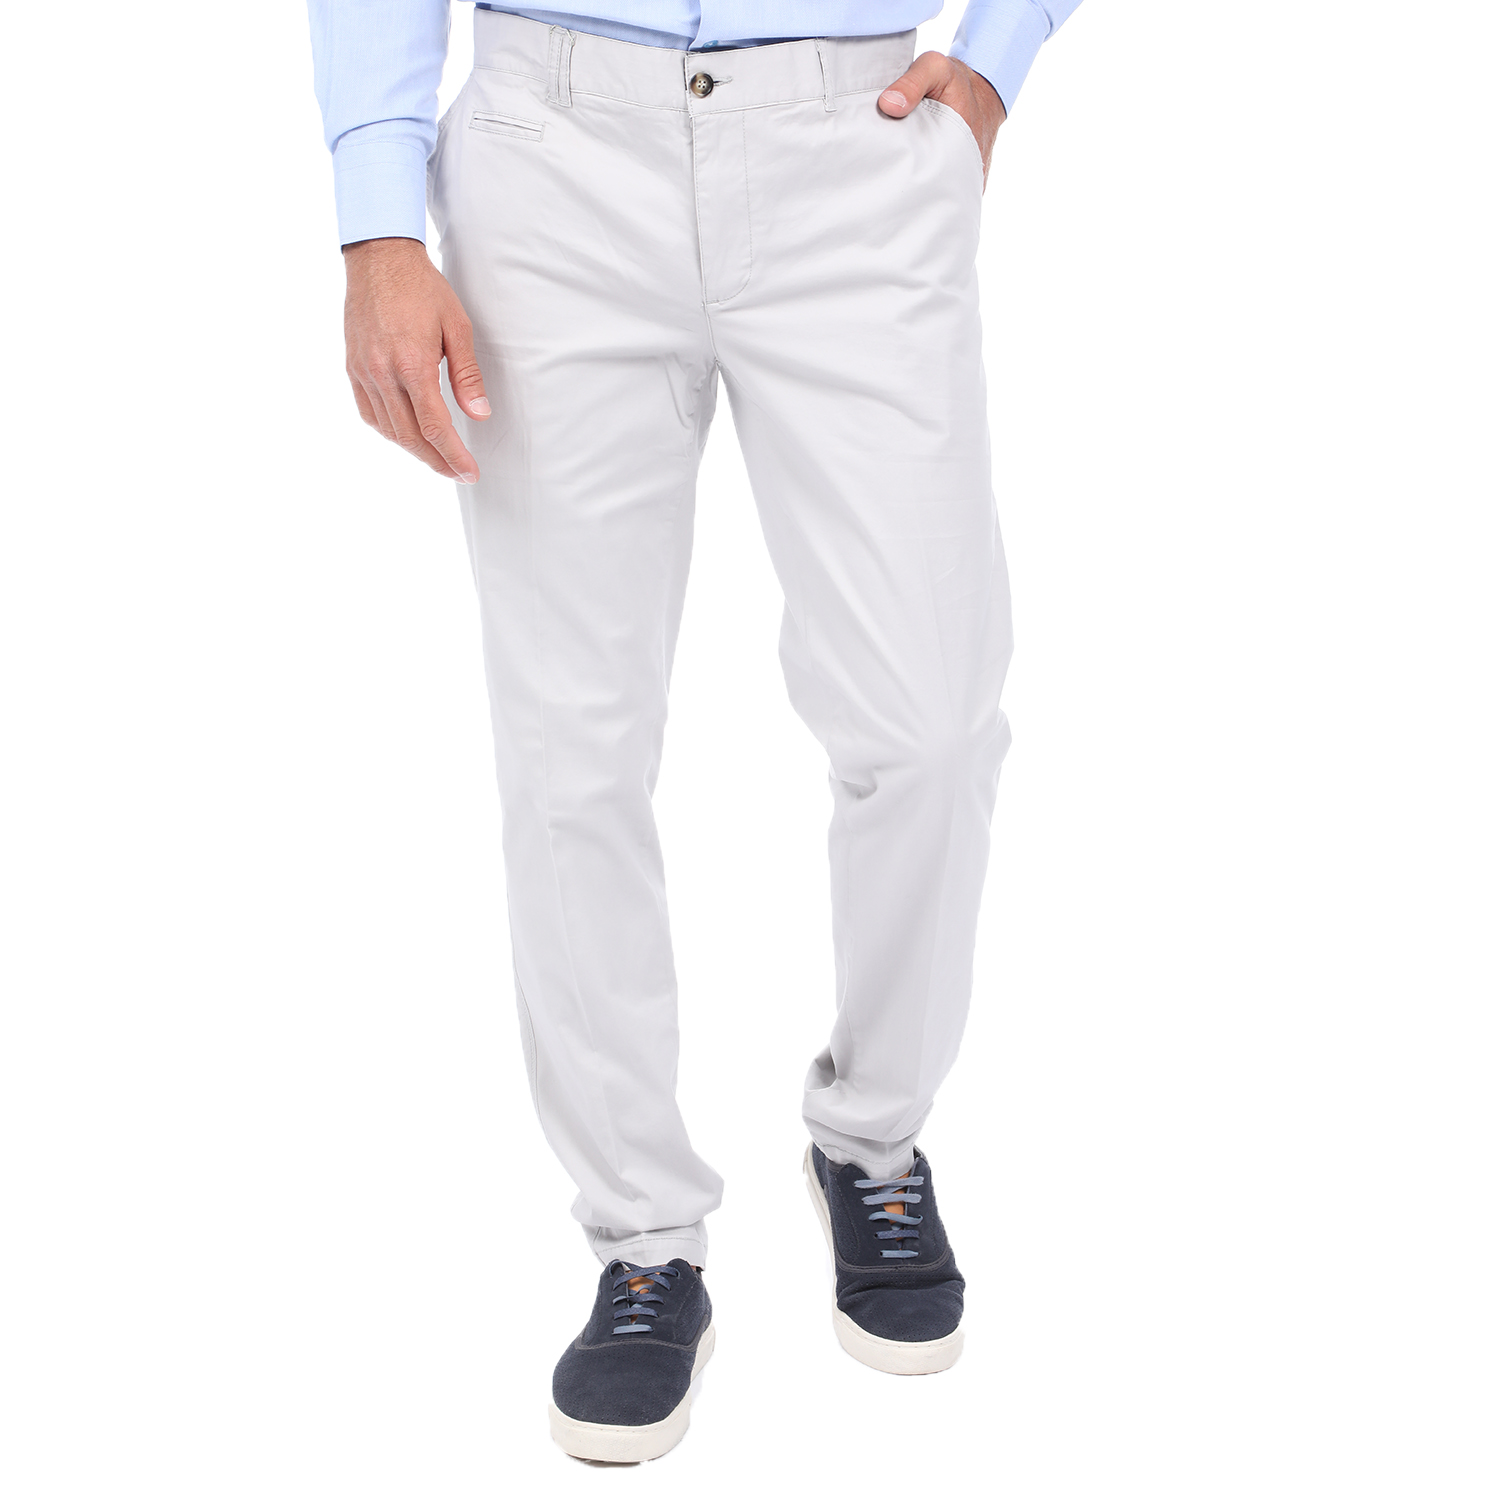 Ανδρικά/Ρούχα/Παντελόνια/Chinos MARTIN & CO - Ανδρικό chino παντελόνι MARTIN & CO SLIM γκρι